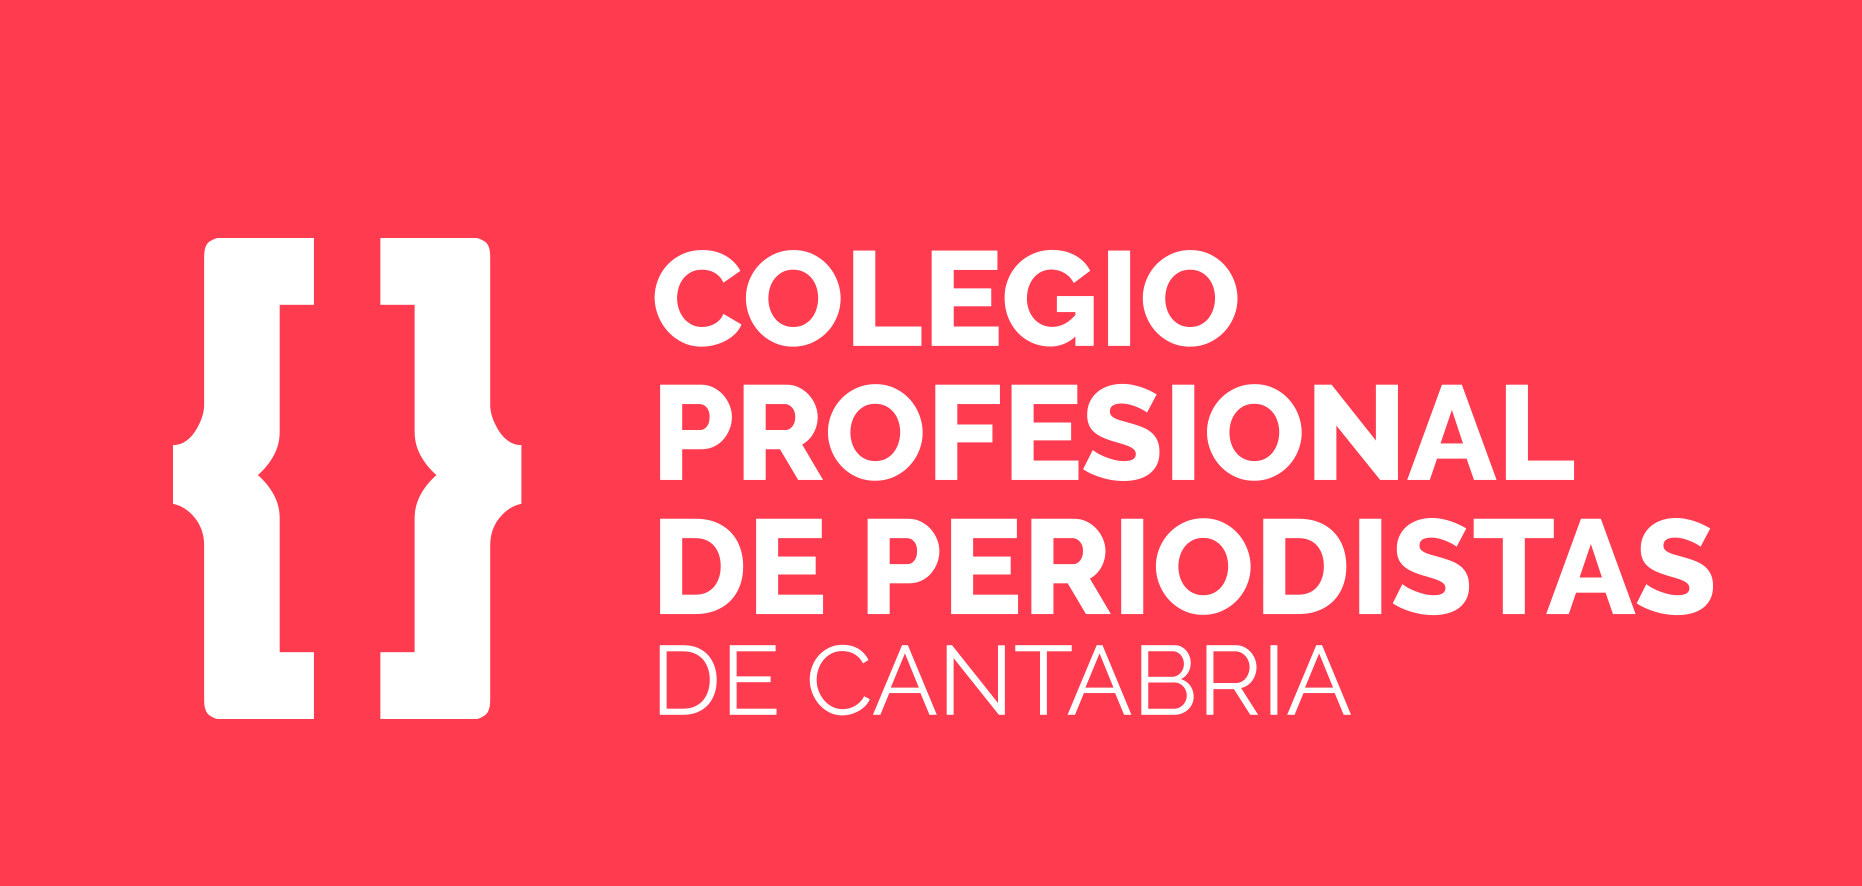 Comunicado del Colegio de Periodistas de Cantabria